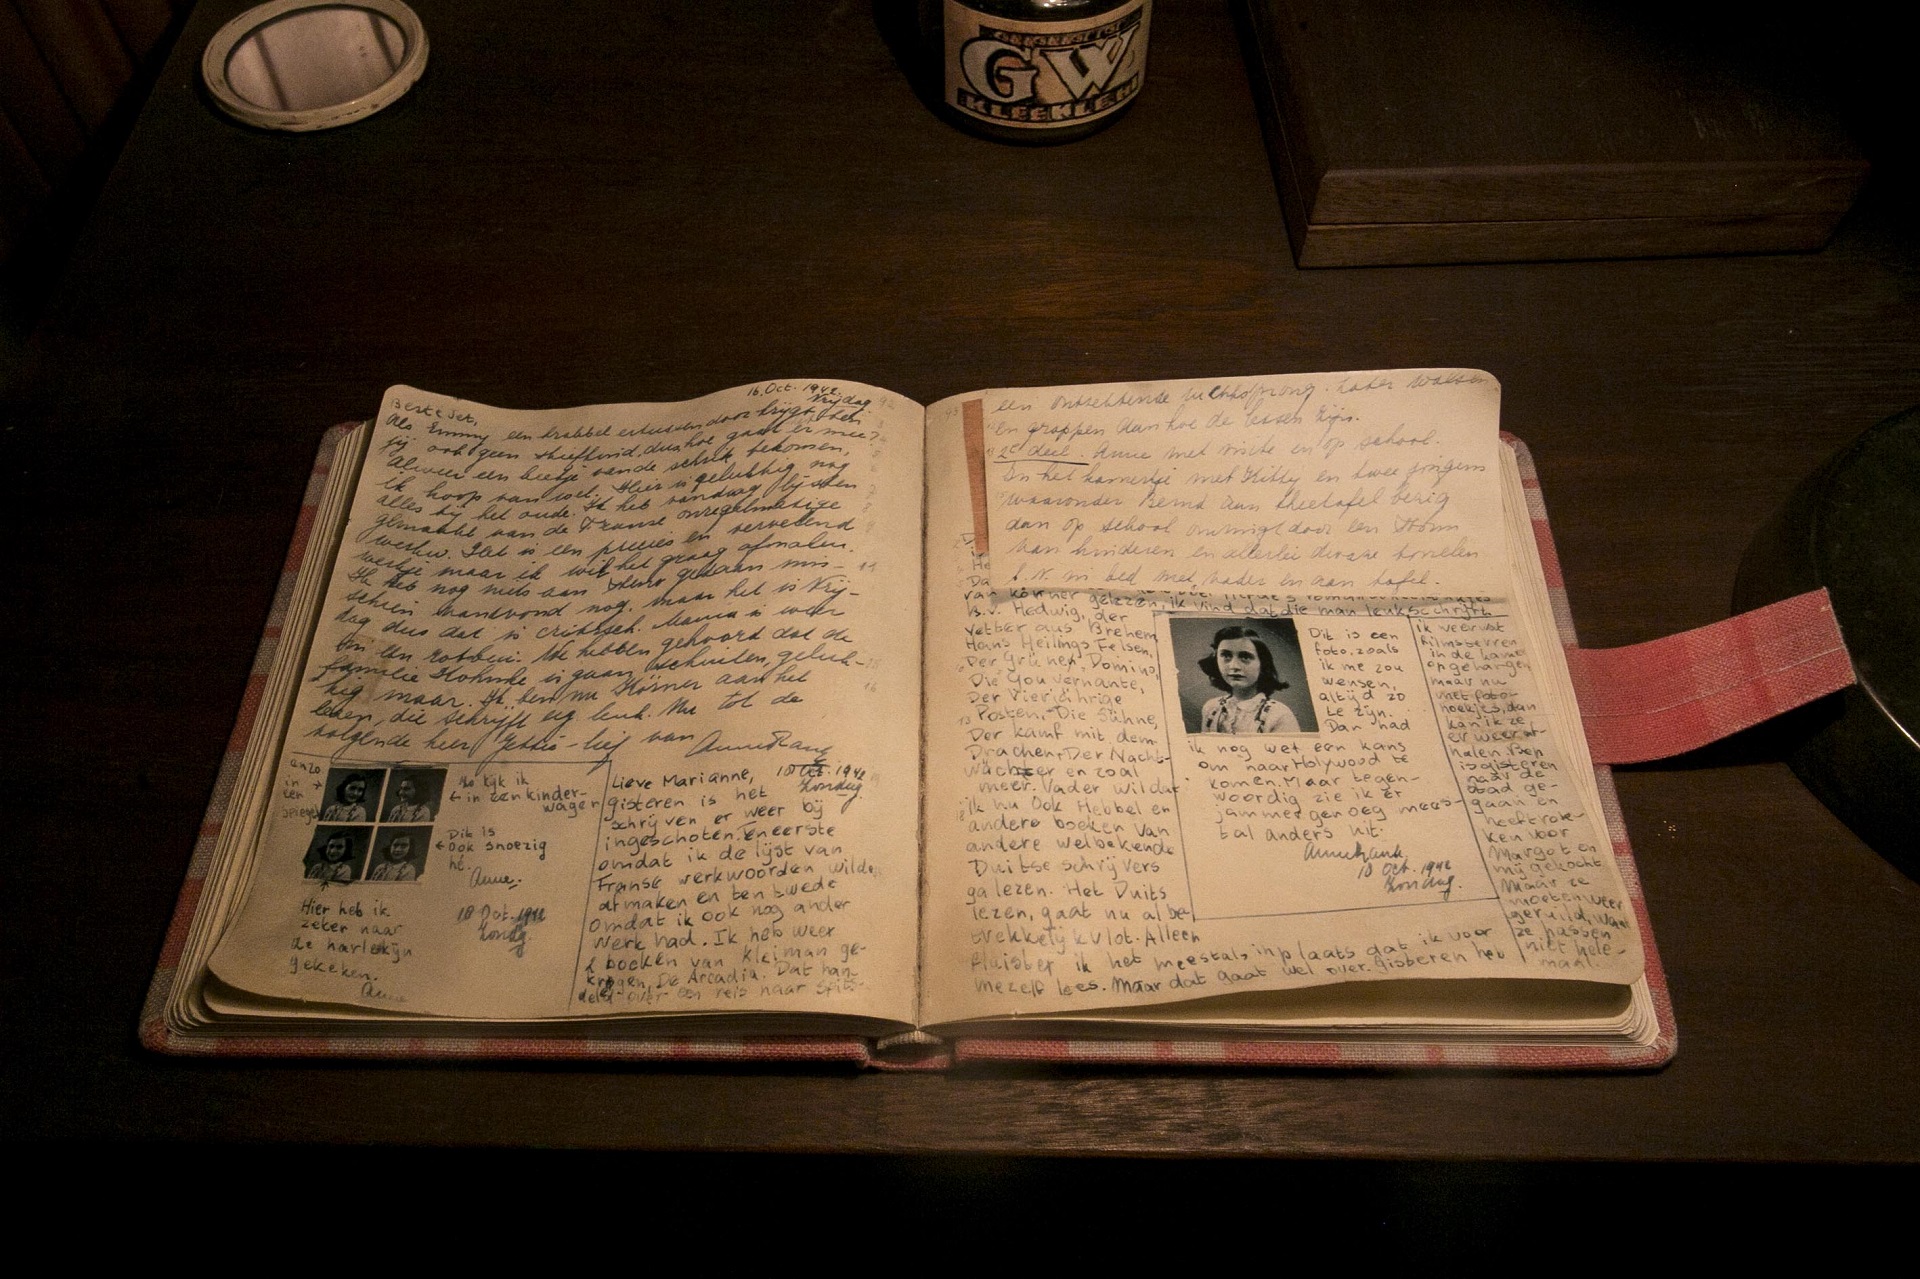 En la casa de atrás, Miep Gies y otro empleado, encuentran el diario de Ana, recogen las páginas dispersas, las ordenan y las llevan a la oficina del almacén. Allí quedaran, librados al azar de la guerra, y les serán entregadas a Otto Frank cuando regrese vivo de los campos nazis de la muerte (Télam)